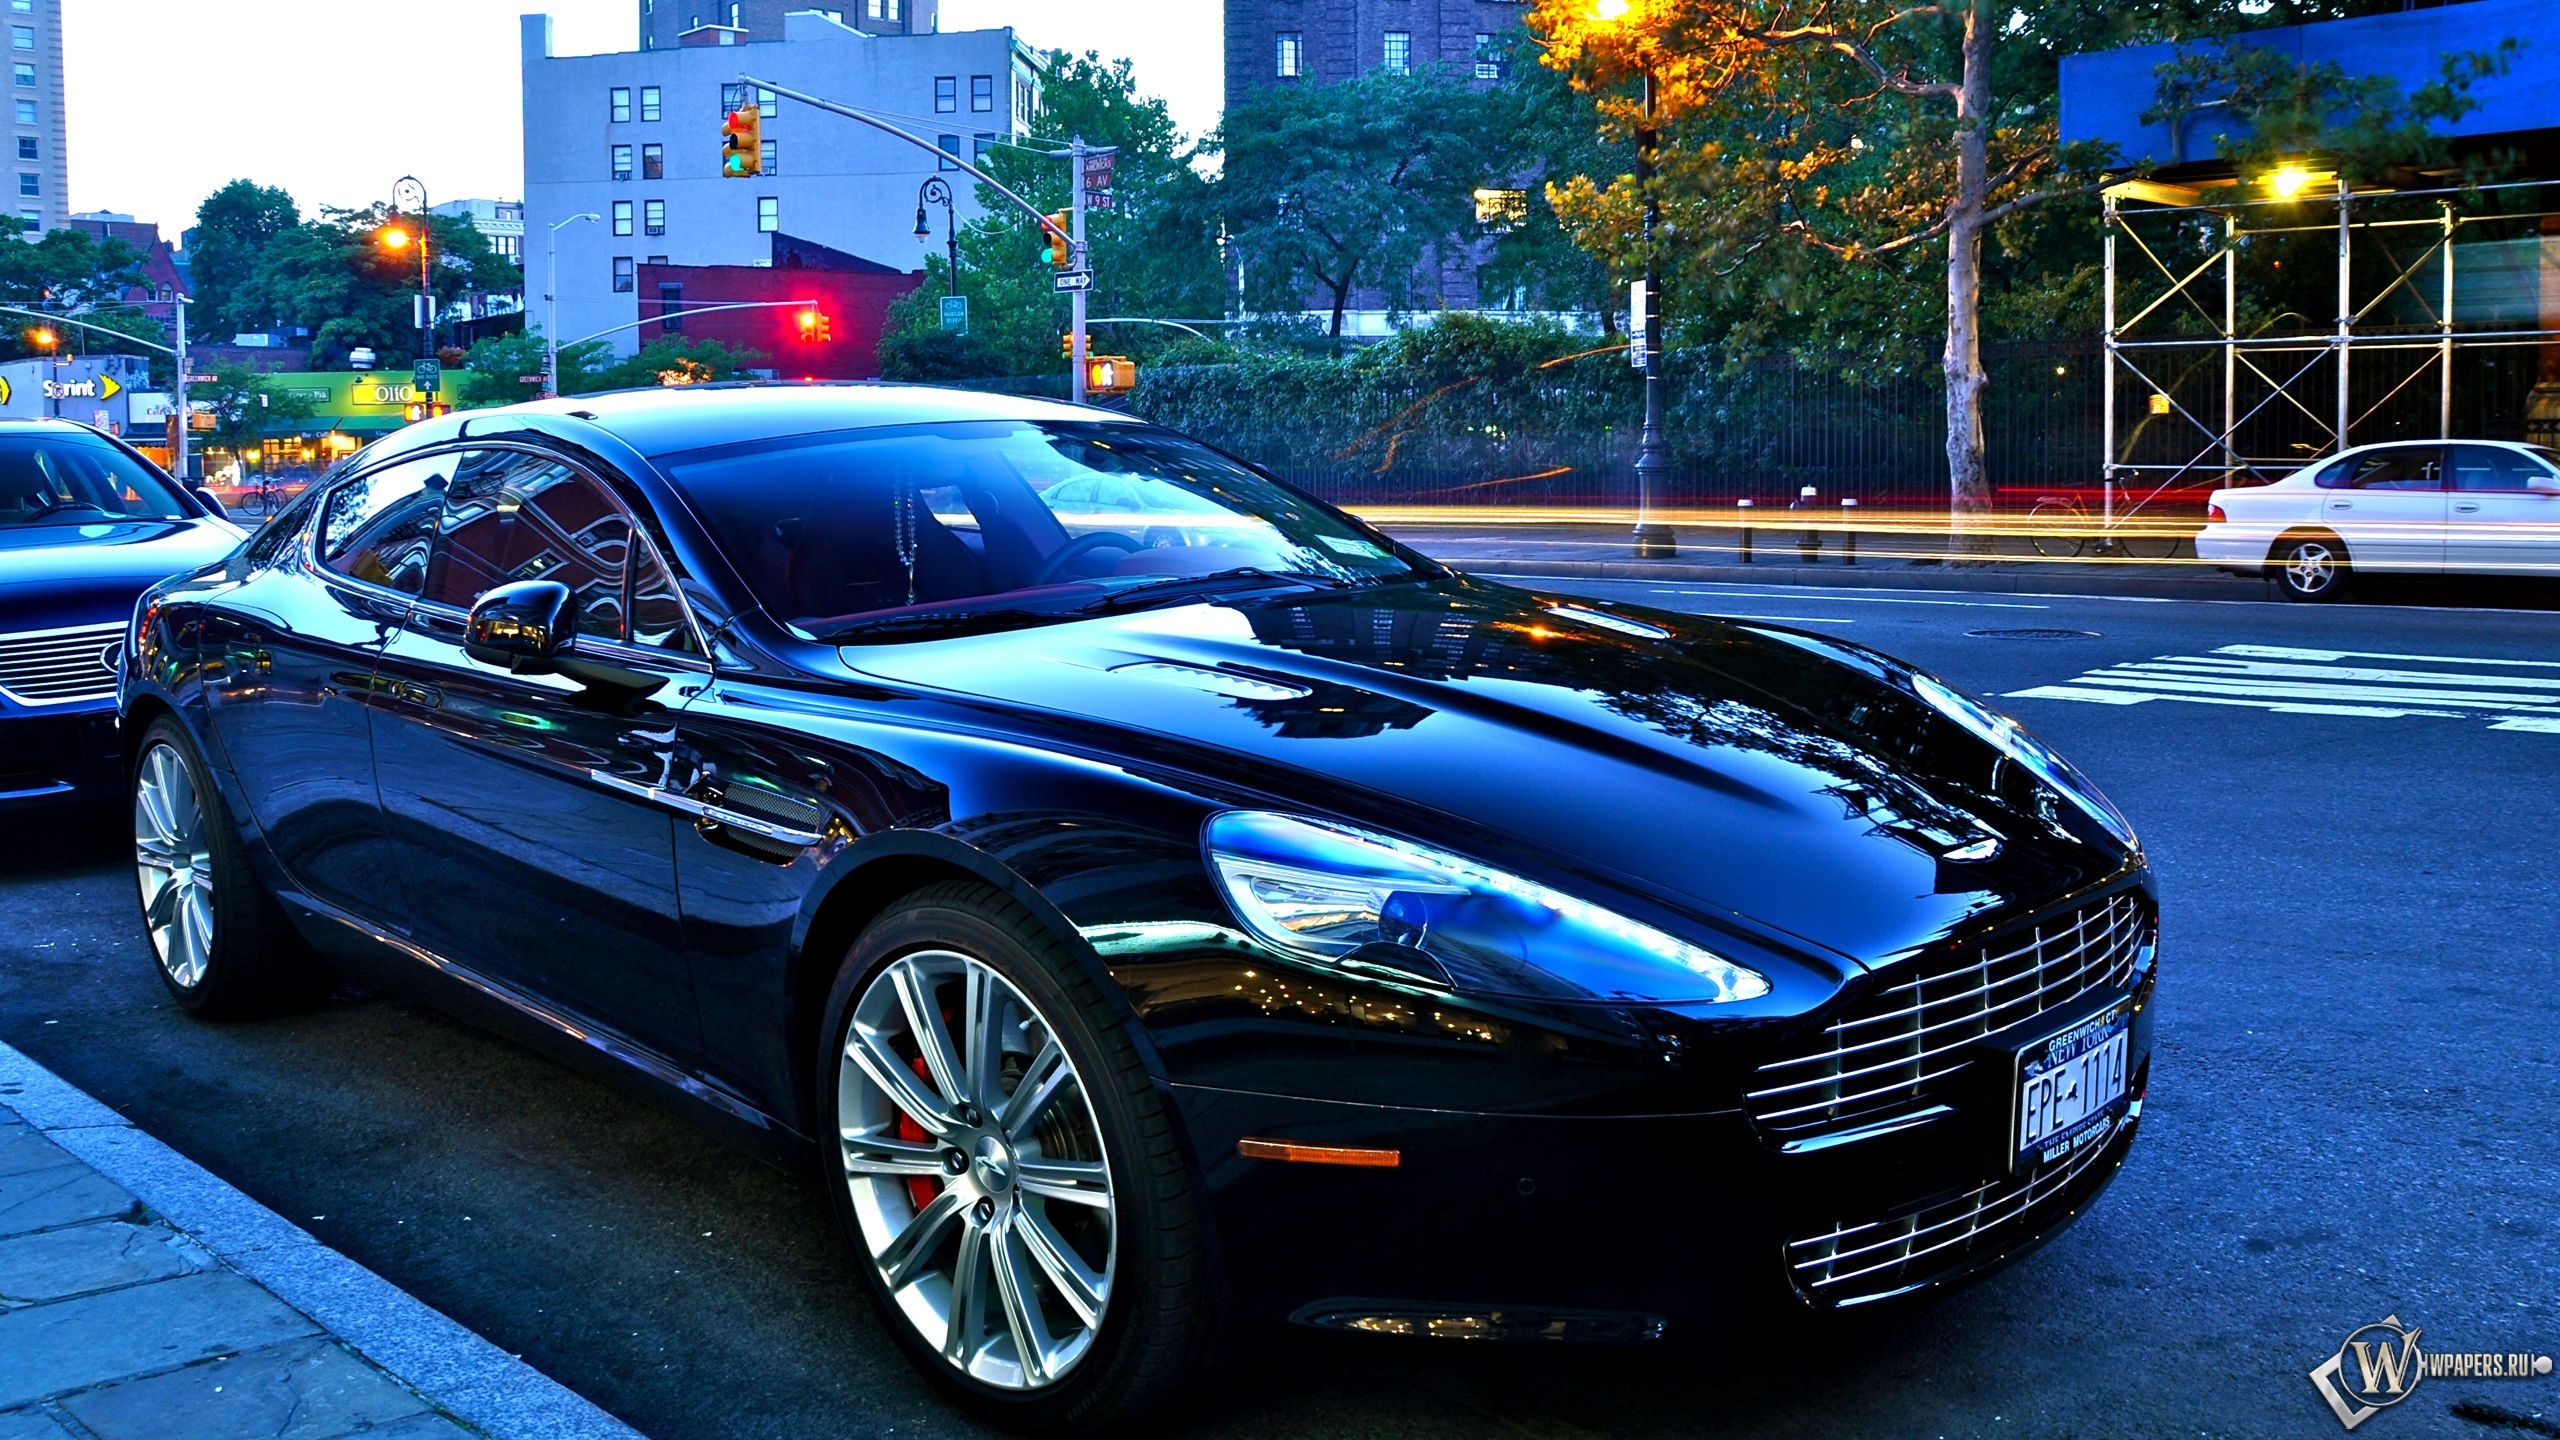 Aston Martin 2560x1440